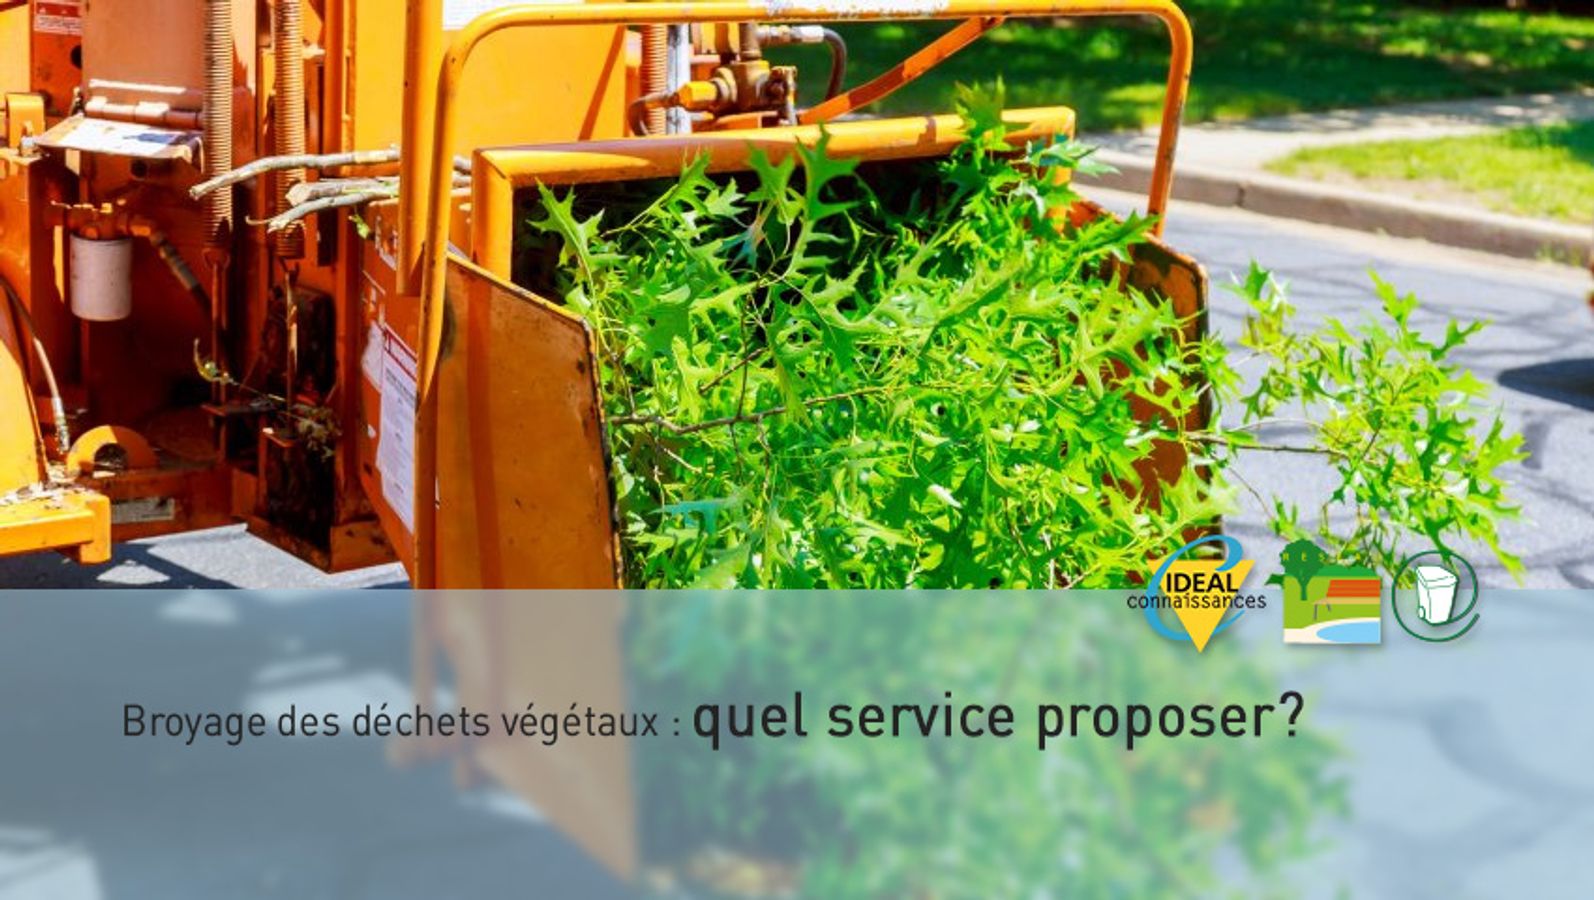 Broyage des déchets végétaux : quel service proposer?